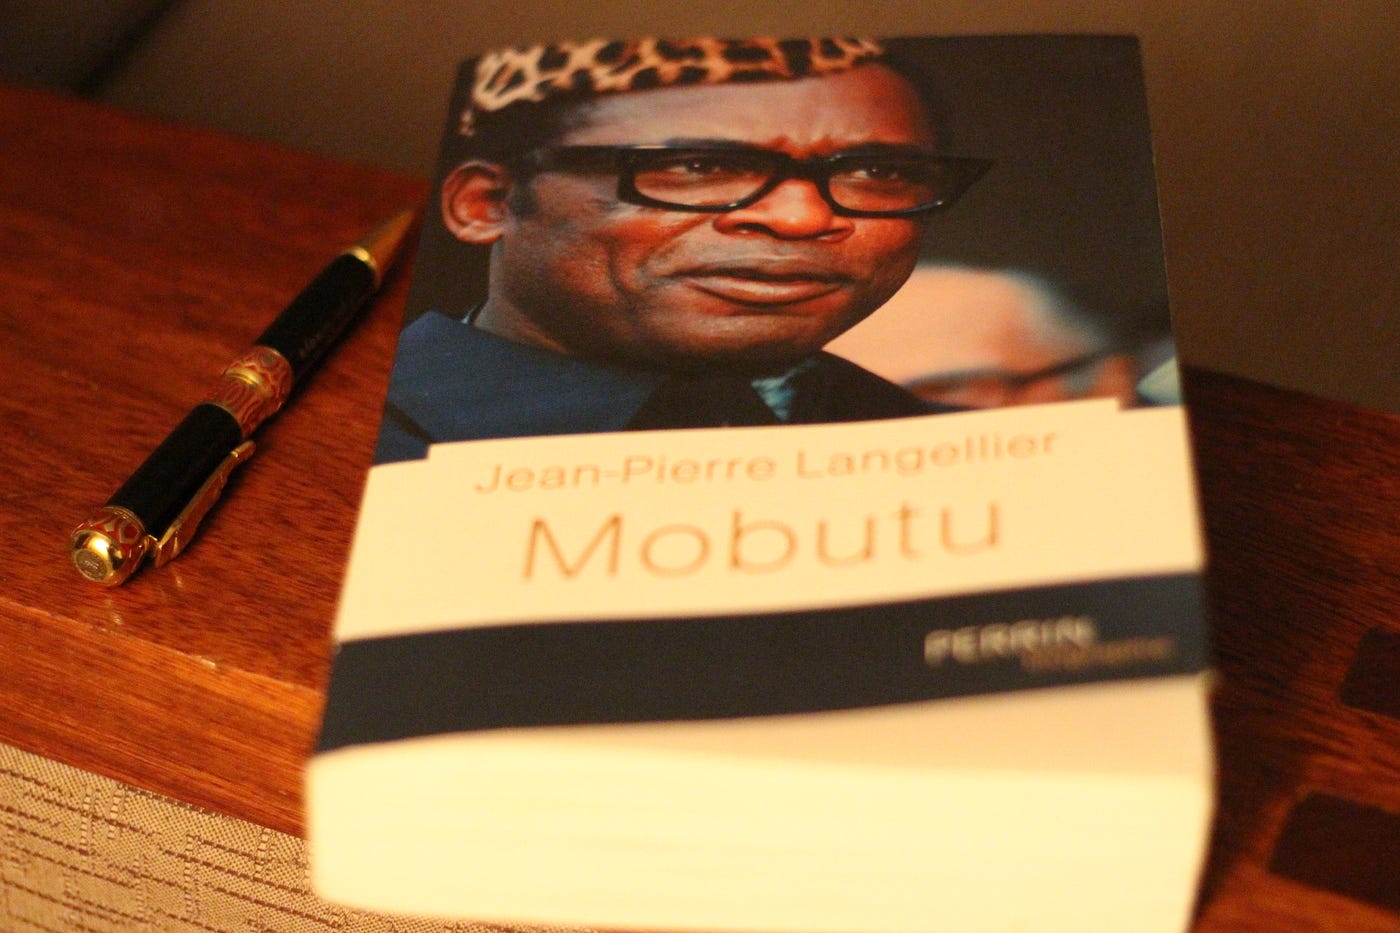 Alors il est comment “Mobutu” de Jean-Pierre Langelllier? | by Yvon Edoumou  | Medium